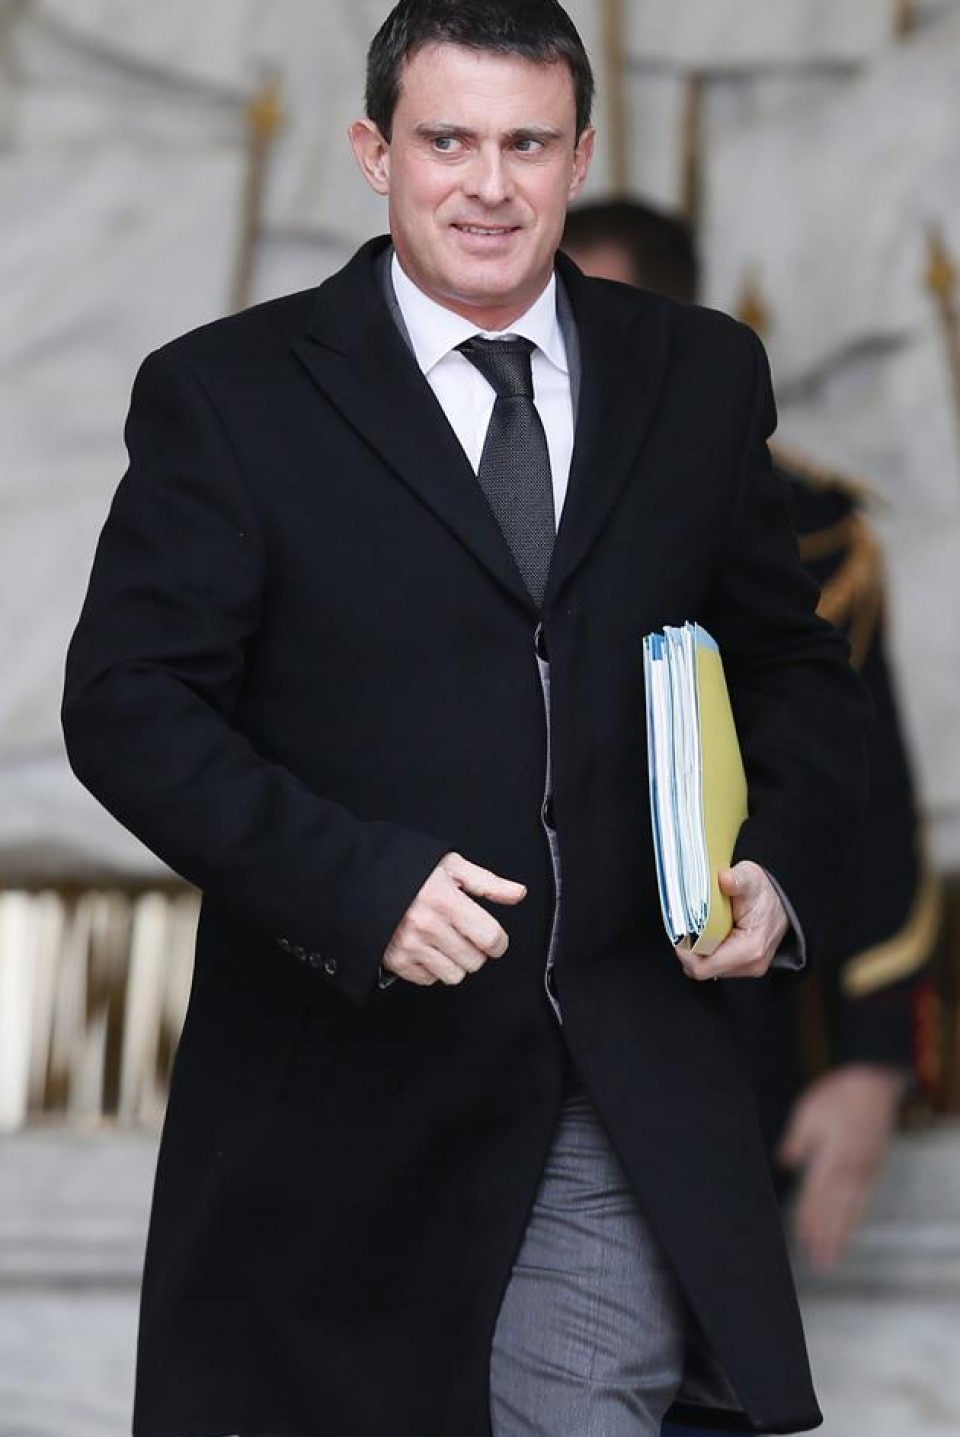 El primer ministro francés, Manuel Valls.